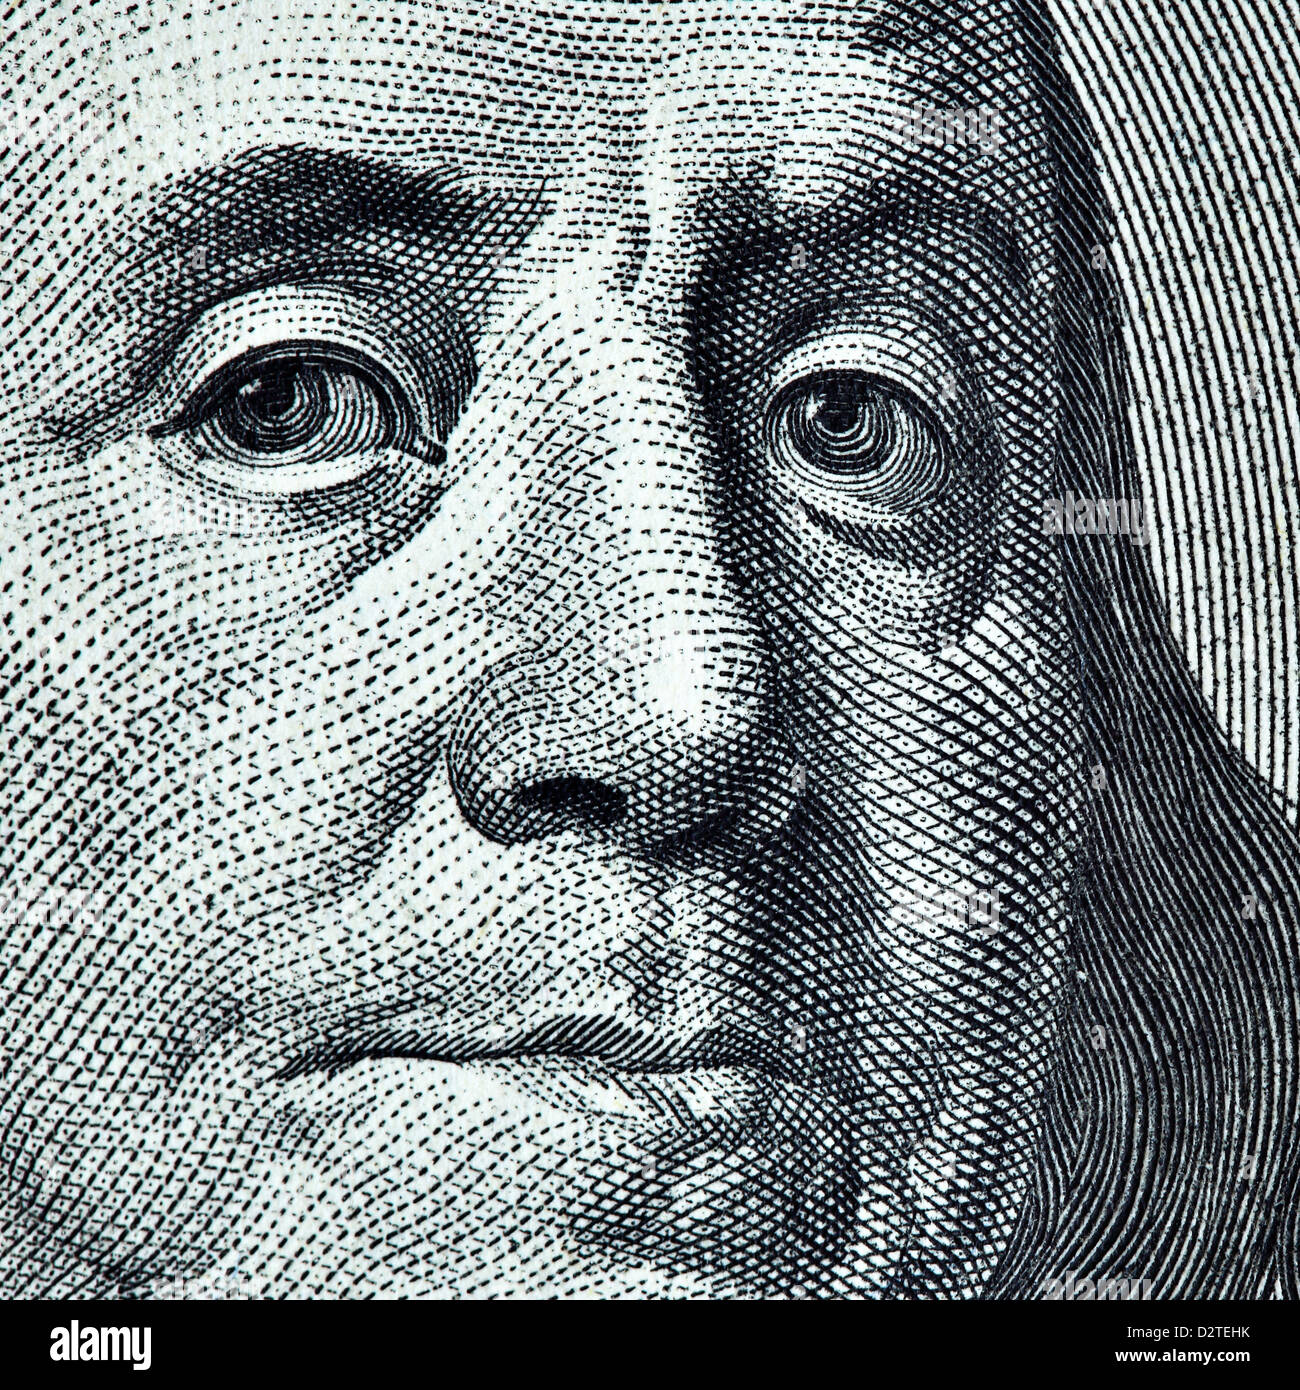 Benjamin Franklin portrait from 100 dollars banknote Stock Photo